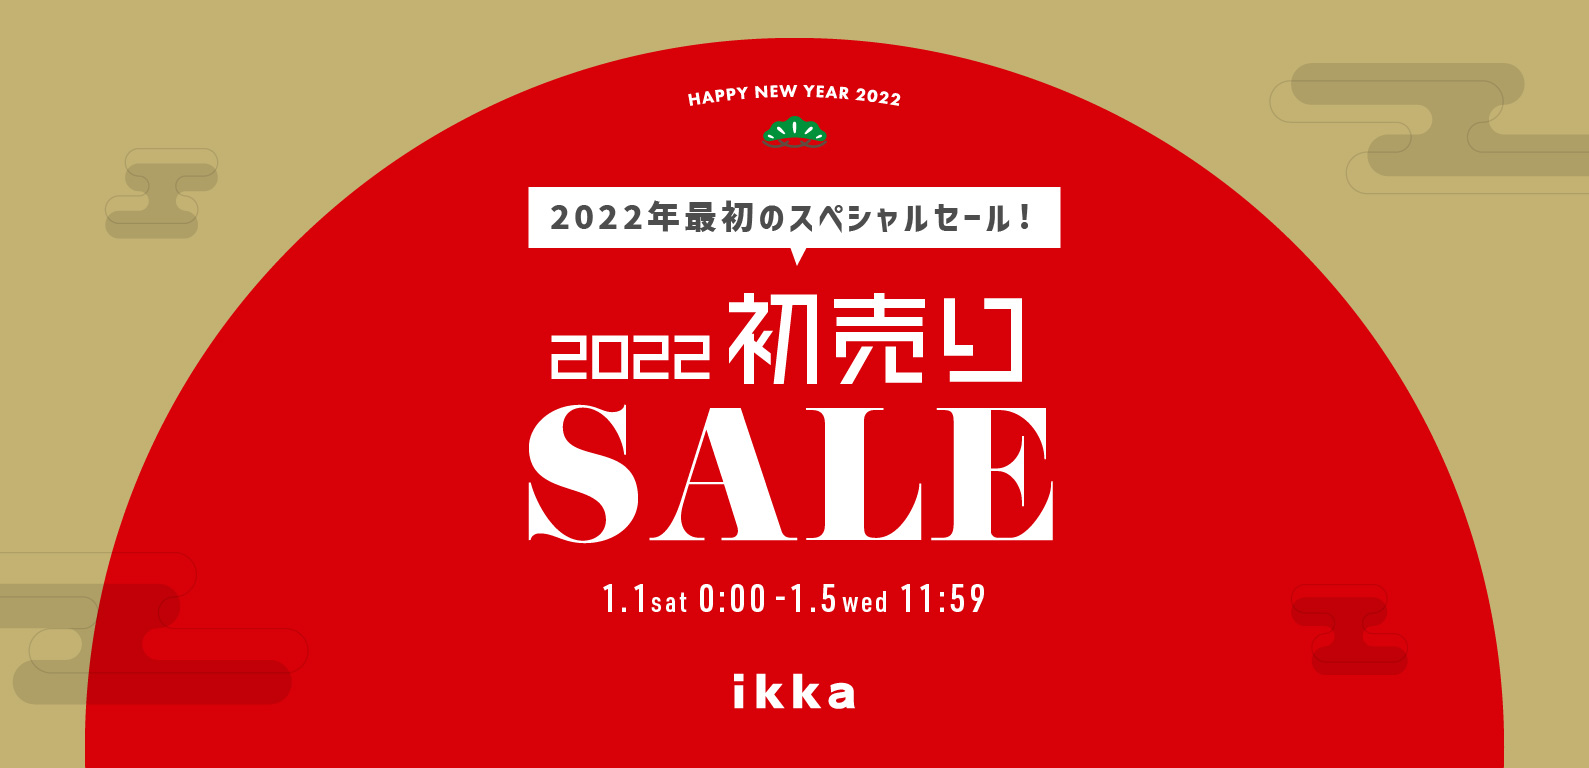 ikka | 2022初売り